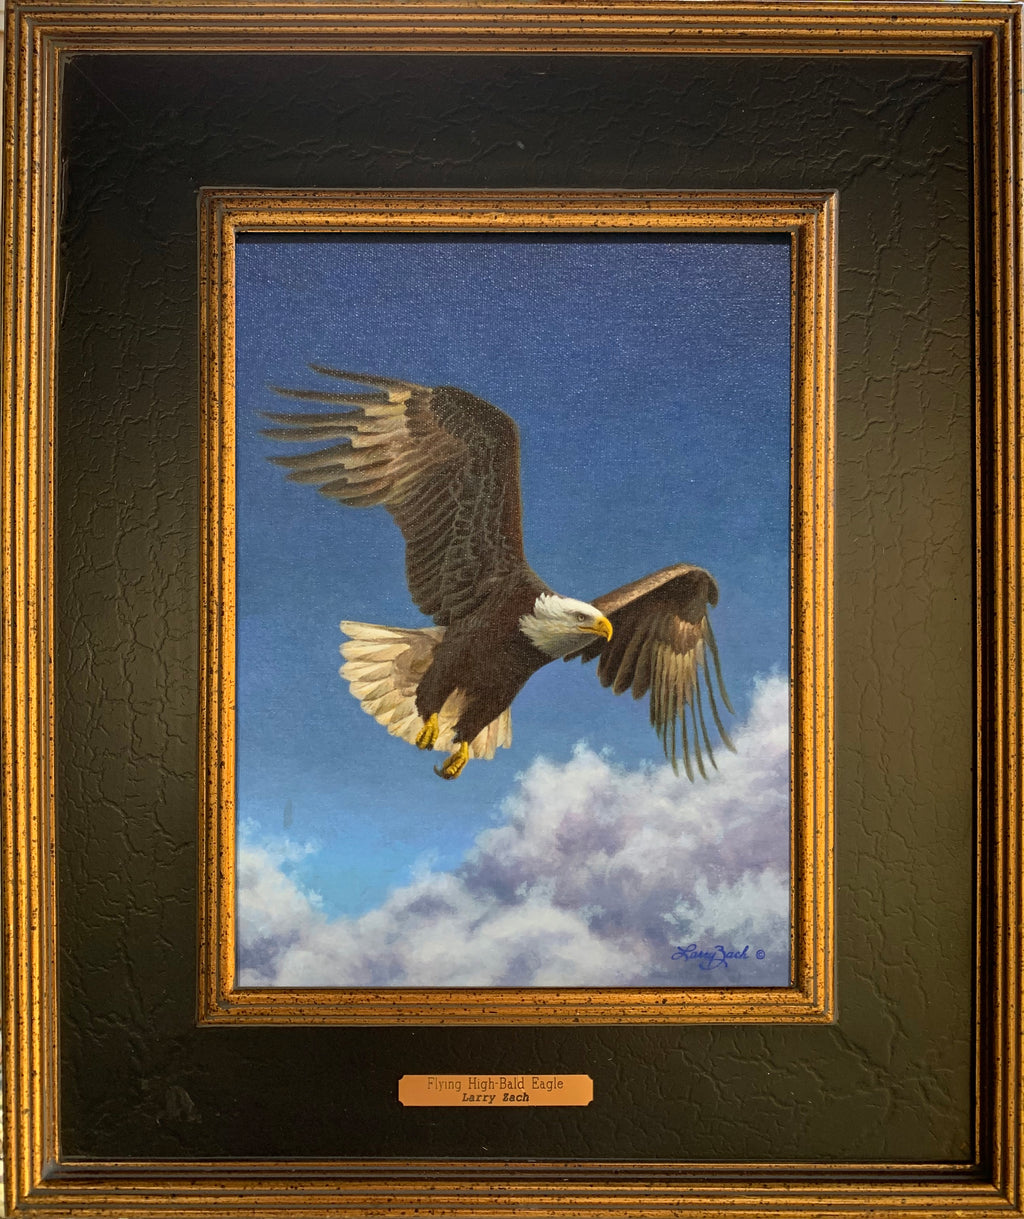 Flying High – Bald Eagle (Original)